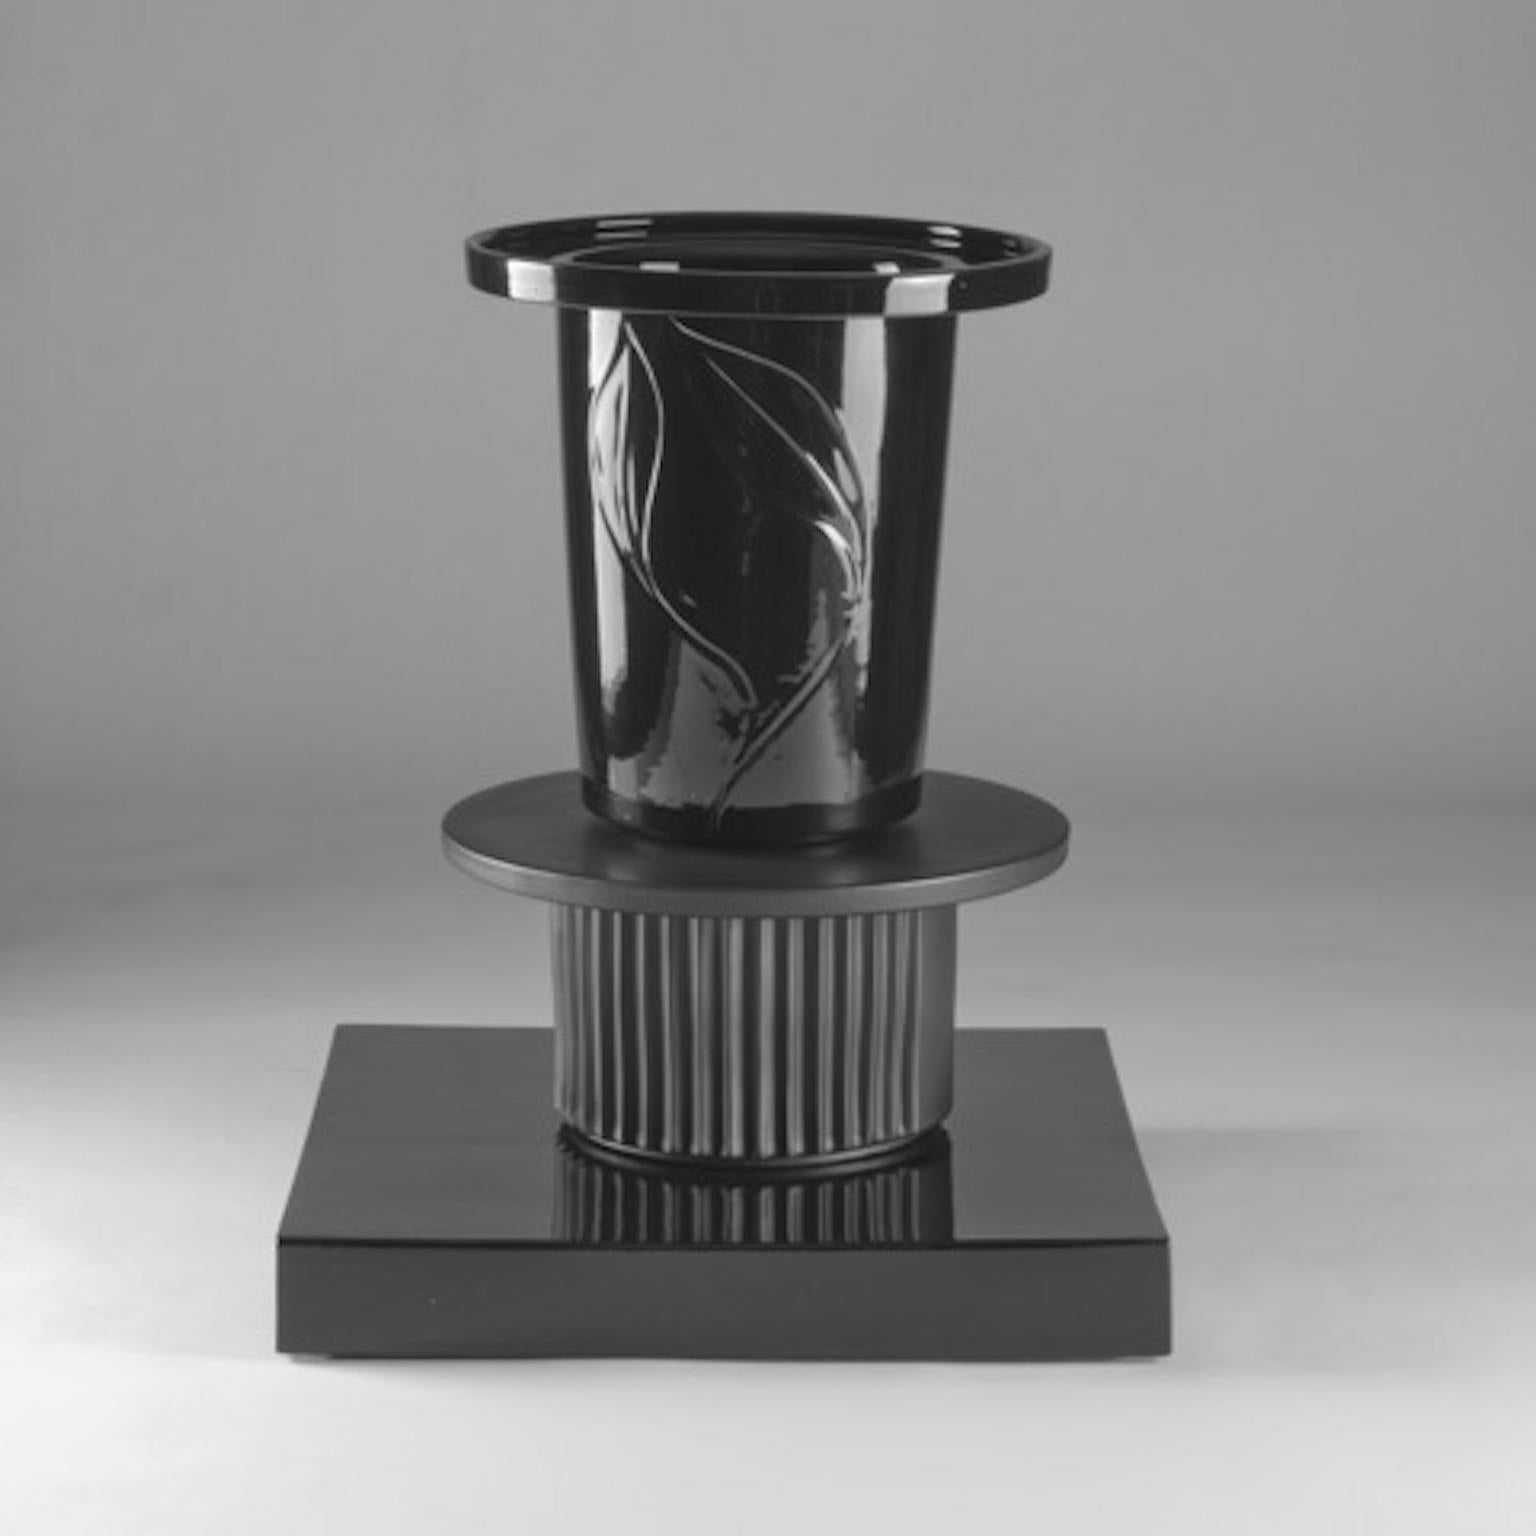 Vase en céramique Rama de la collection Black&Black conçue par Sergio Asti et produite par Superego Editions. Edition limitée de 50 pièces. Signés et numérotés.

Biographie
Les éditions Superego sont nées en 2006, exerçant une activité constante de